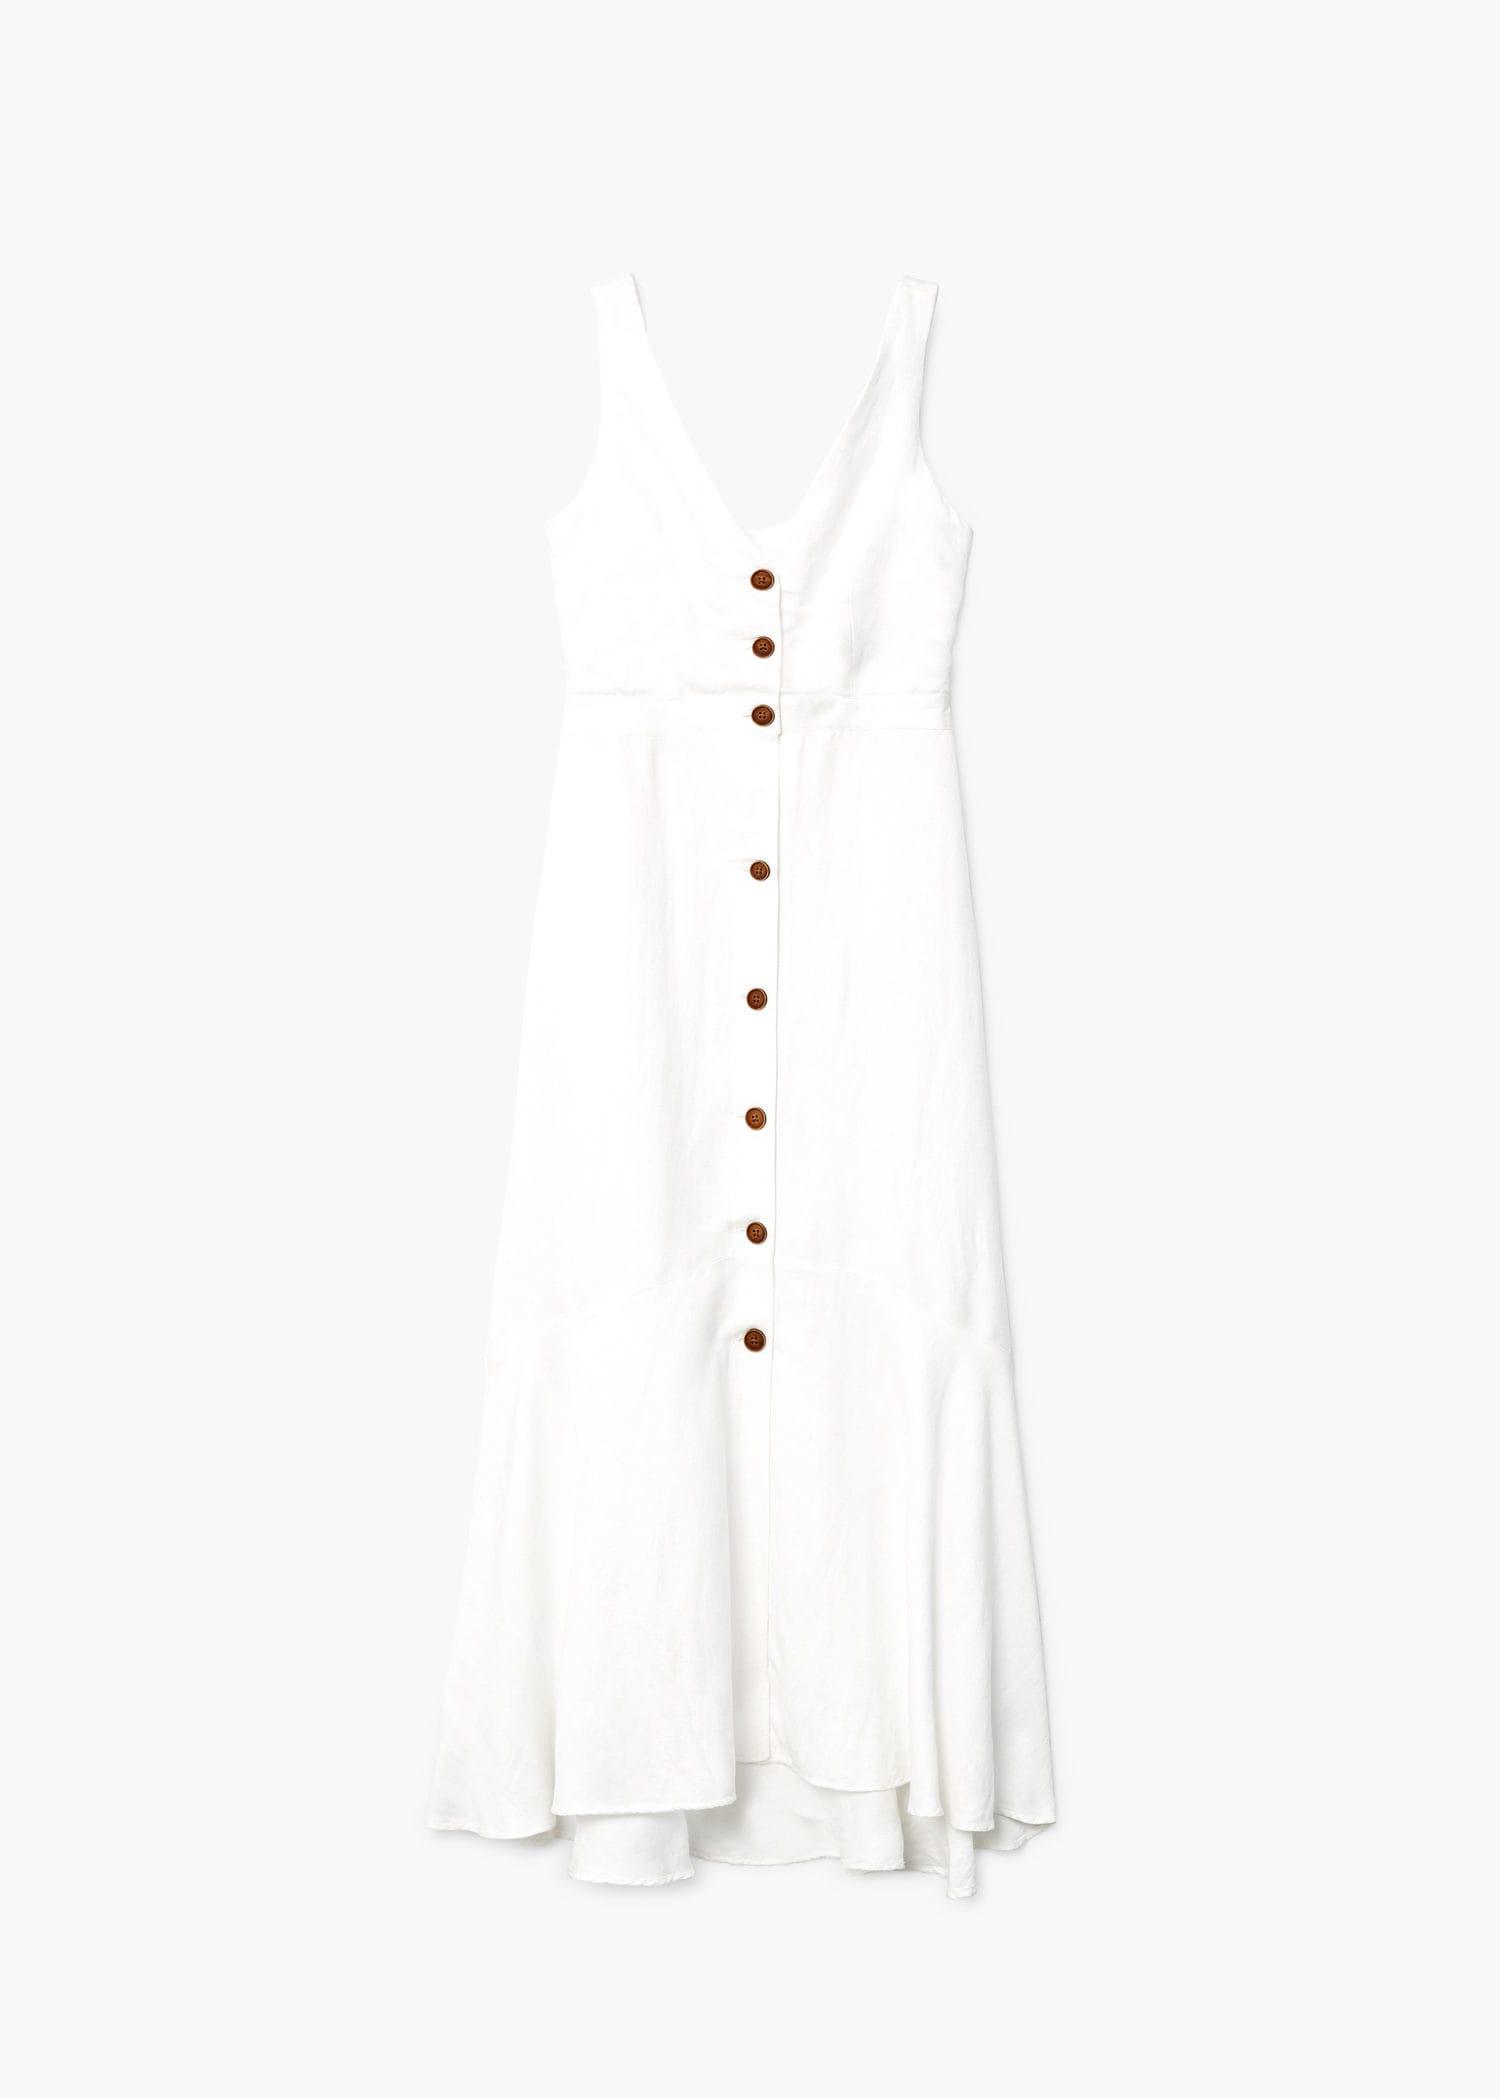 mango white linen dress